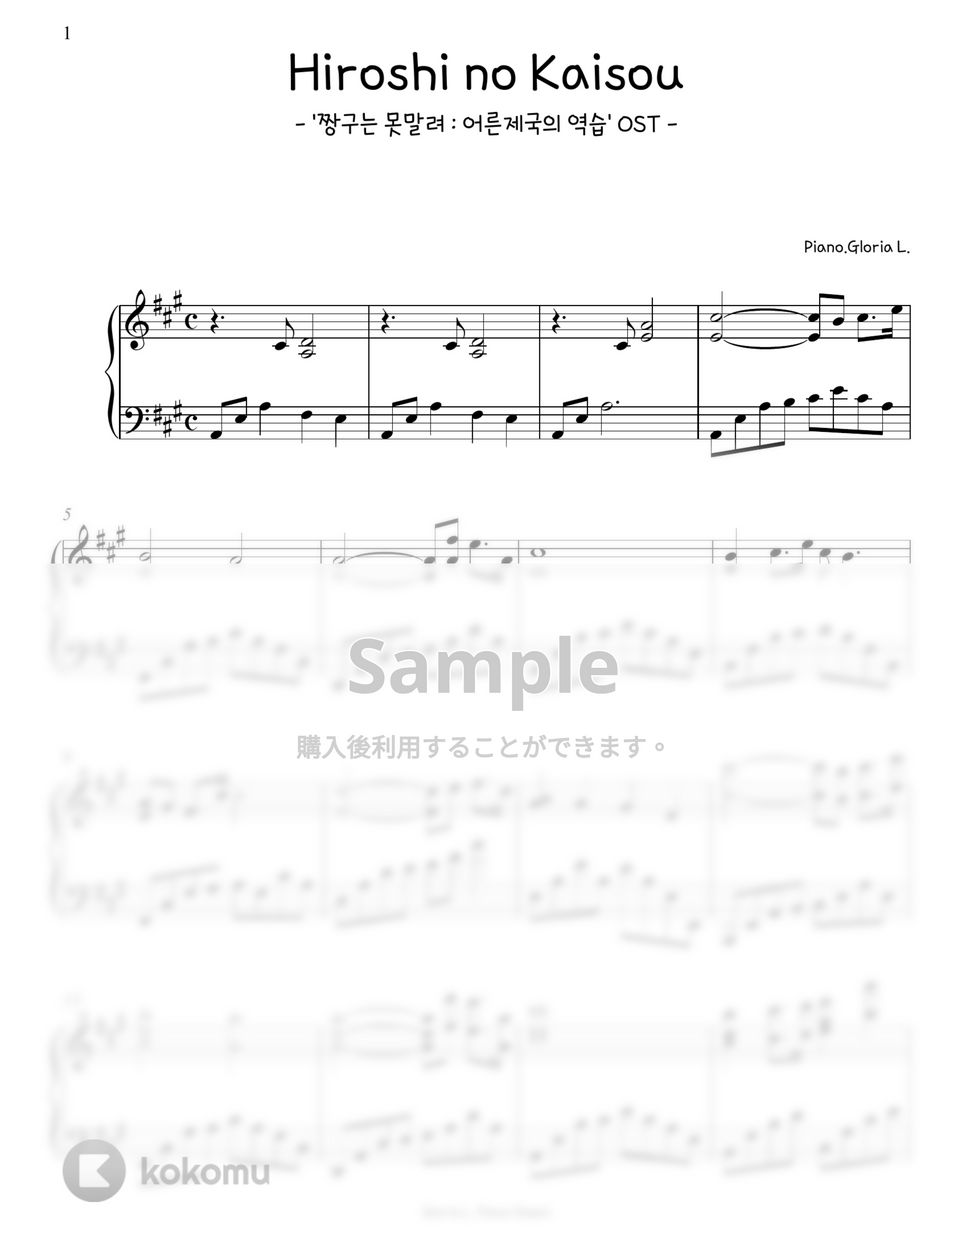 クレヨンしんちゃん OST - ひろしの回想 (派手なバージョン) by Gloria L.